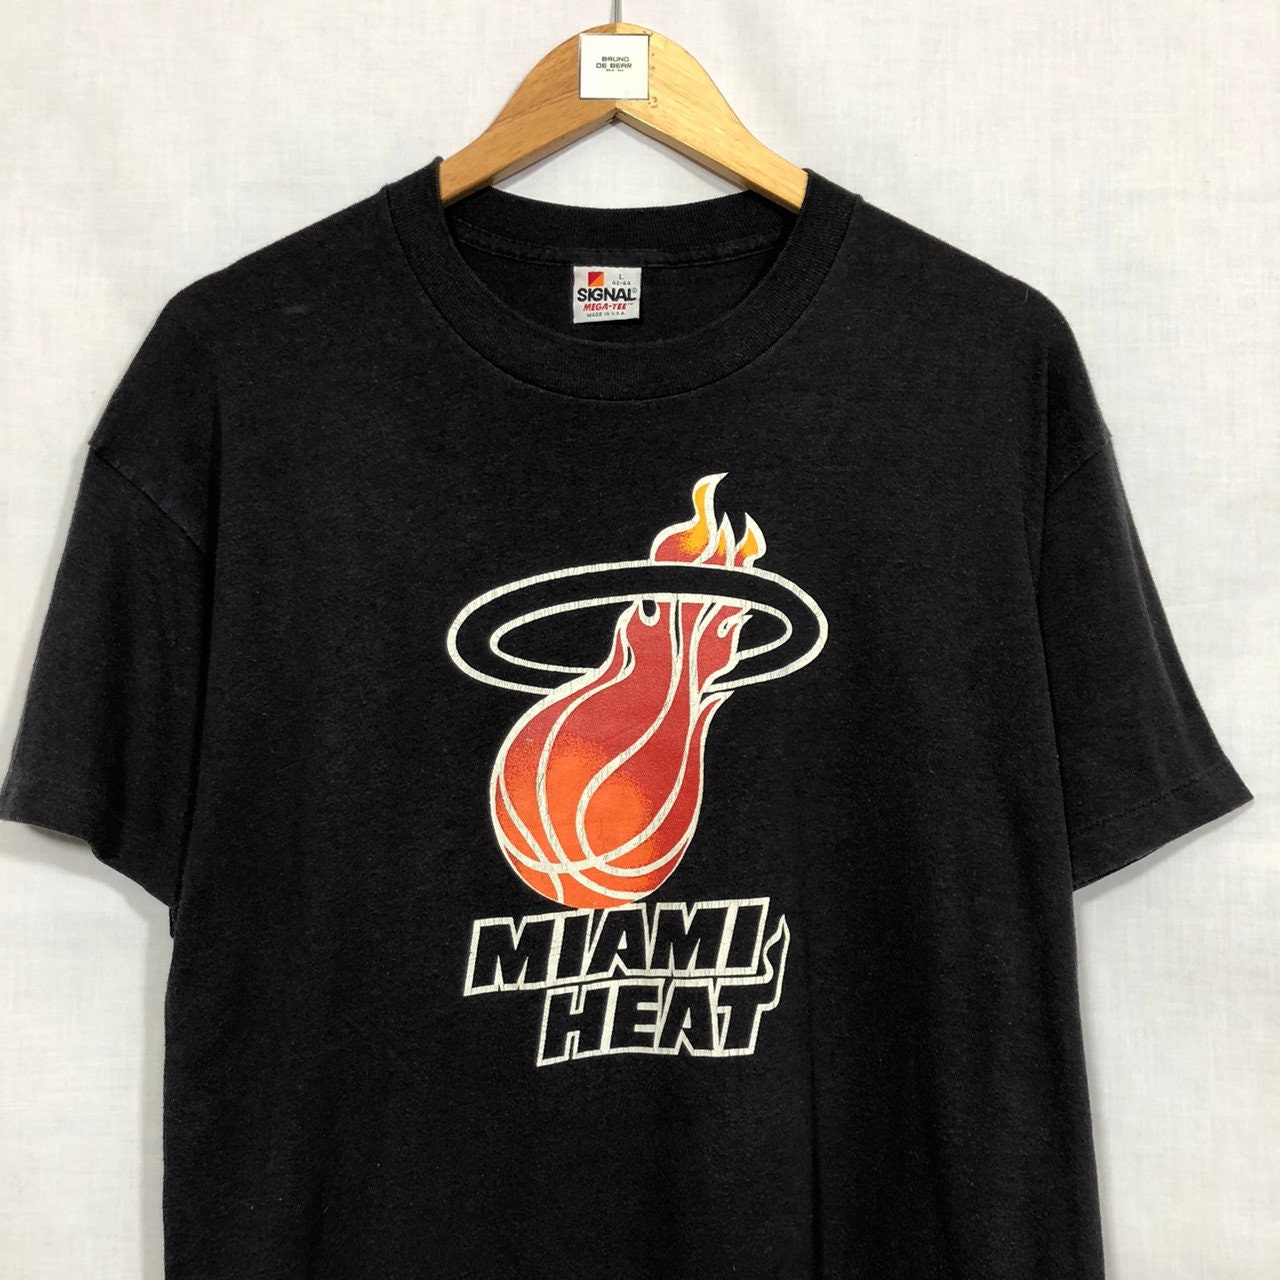 Vintage 90’s Nike Alonzo Mourning RARE Miami Heat single stitch white tee  shirt